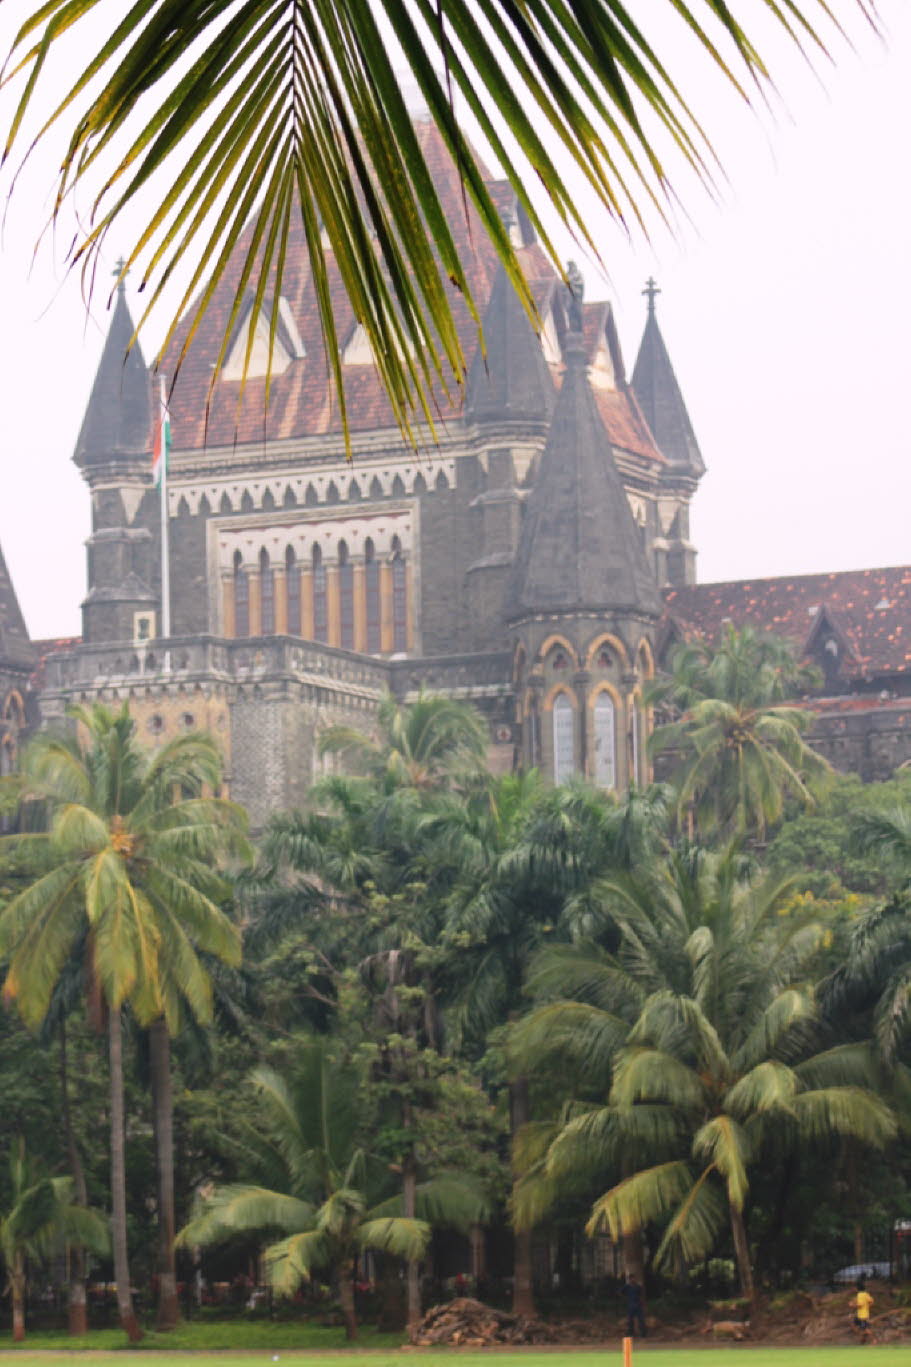 1857 wurde die Universität  als University of Bombay im damaligen Britisch-Indien nach dem Modell britischer Universitäten gegründet. Sie ist eine der drei ältesten Universitäten Indiens. 1858 wurde das Jesuitenkolleg St. Xavier’s College der Universität 